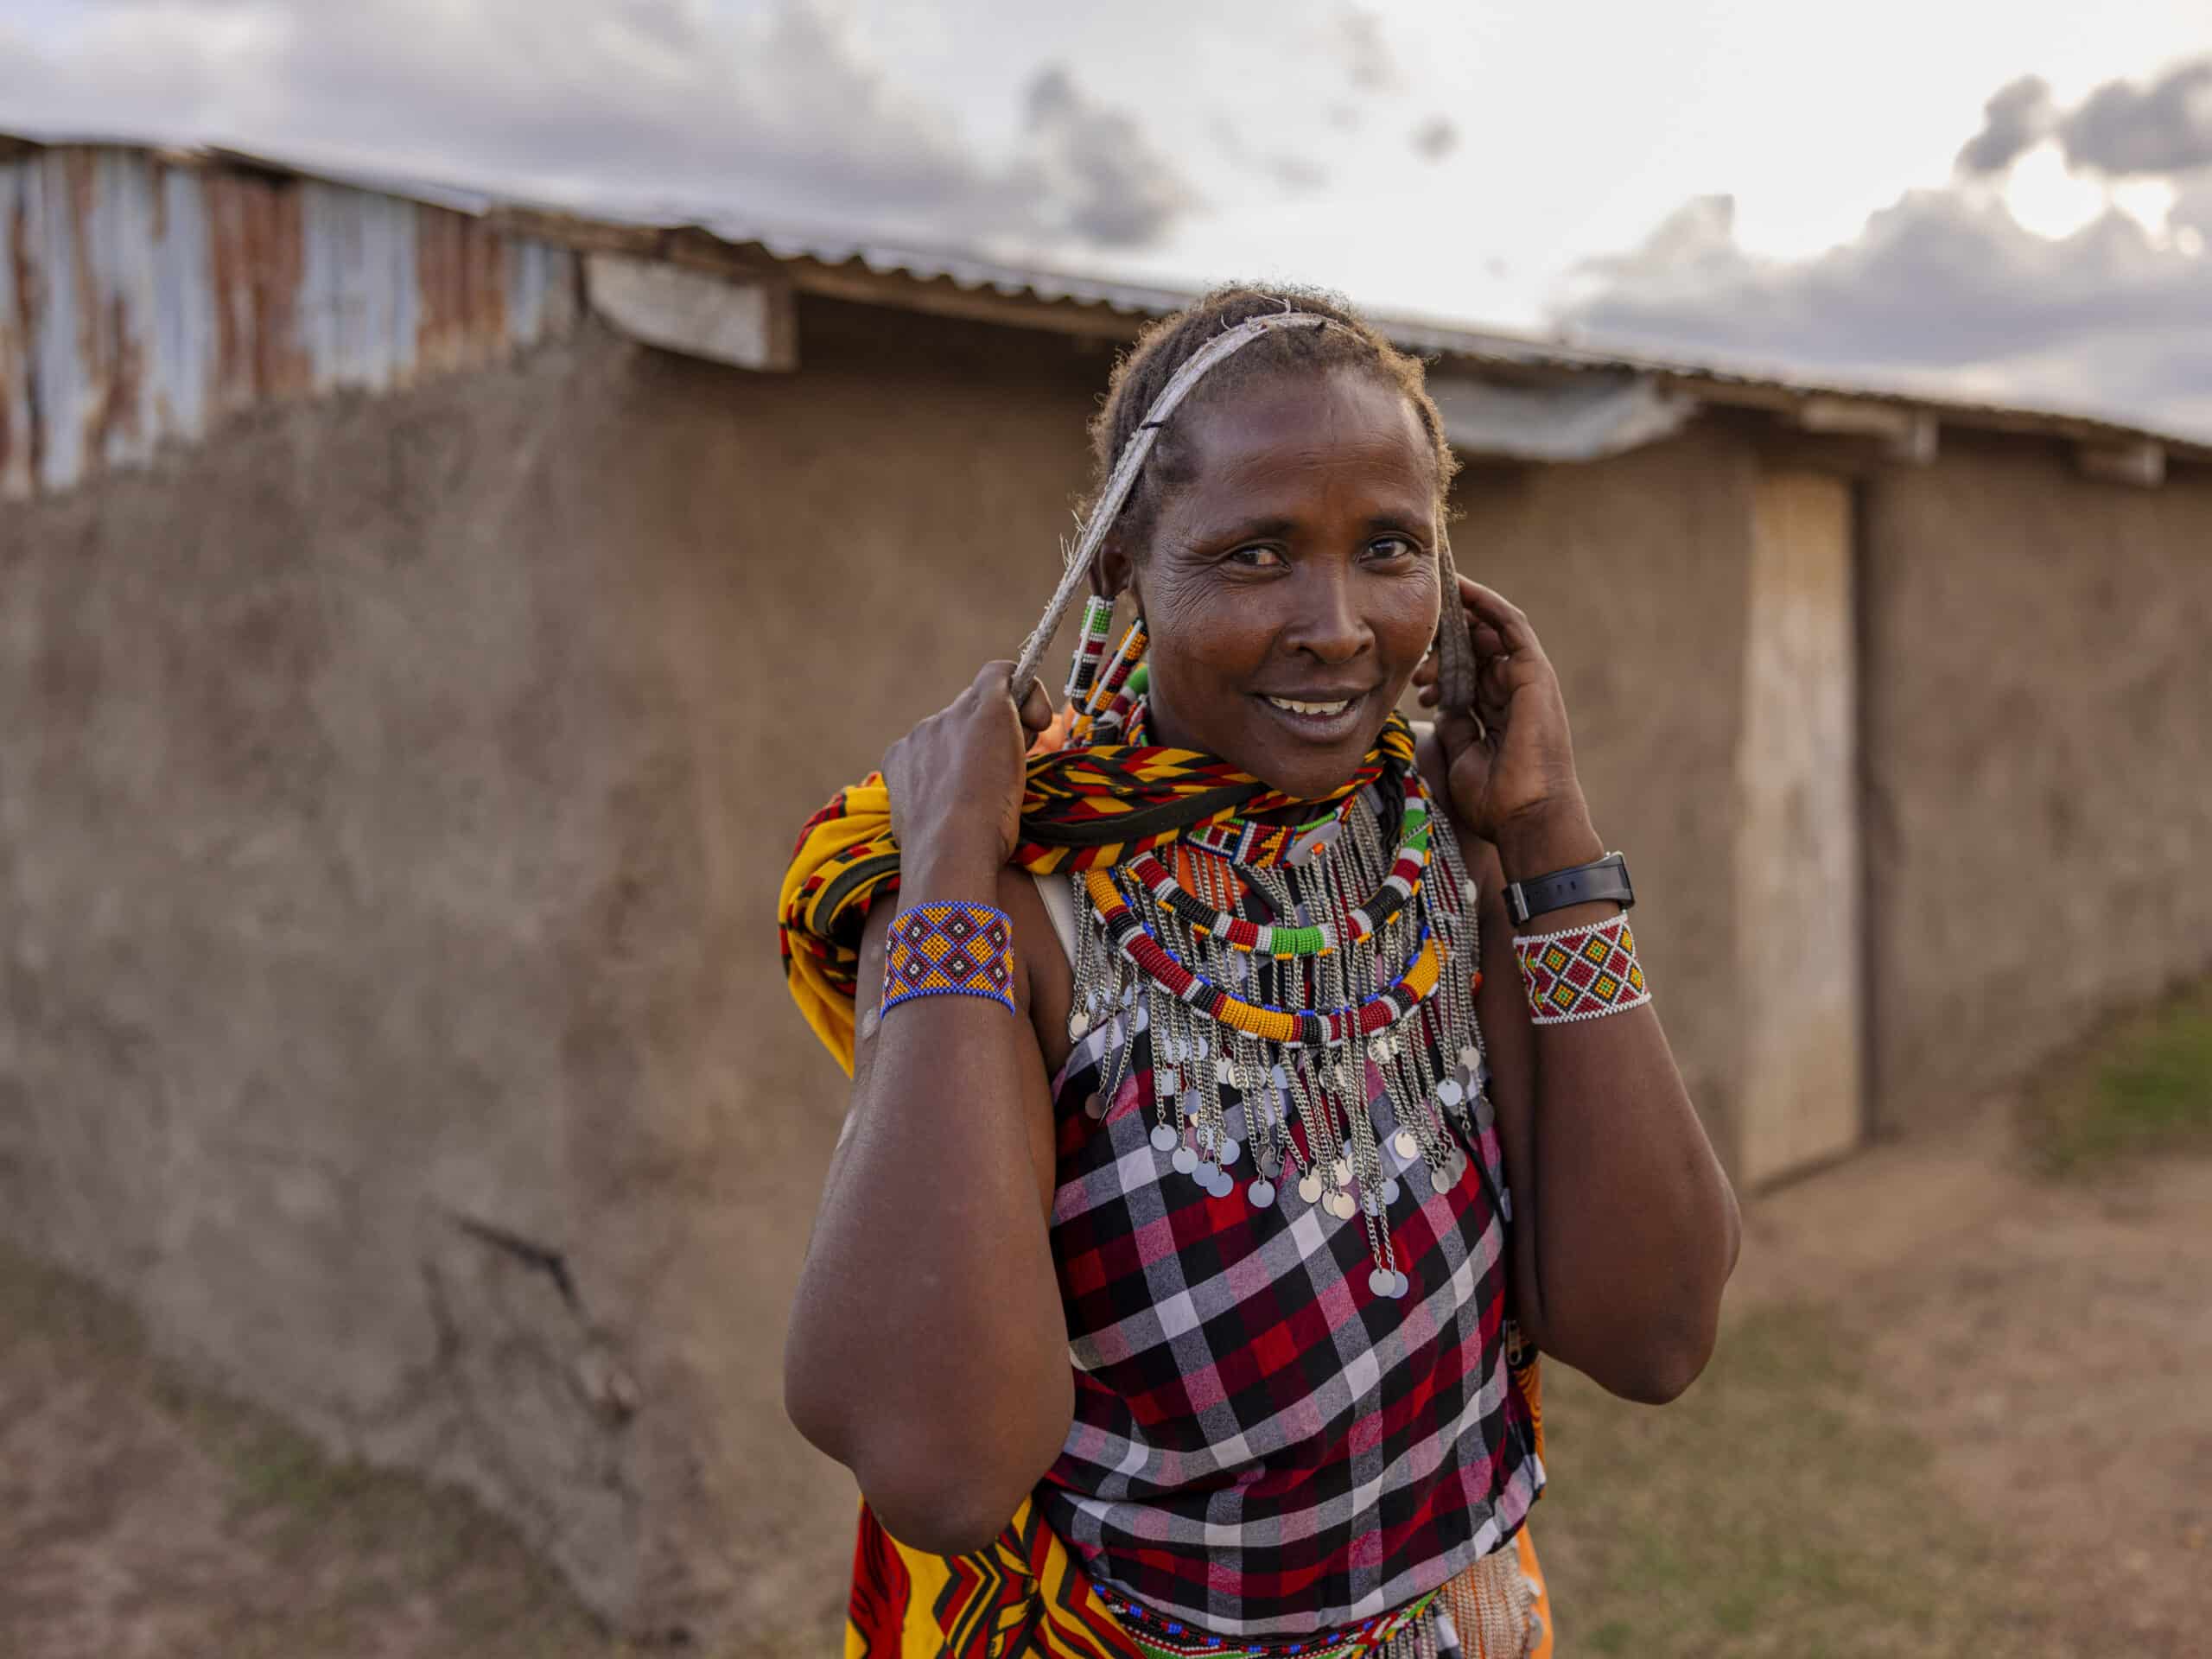 Eine lächelnde Frau in traditioneller kenianischer Kleidung, geschmückt mit leuchtenden Perlen und farbenfrohen Kleidungsstücken, steht vor rustikalen Gebäuden und rückt unter einem bewölkten Himmel ihre Halskette zurecht. © Fotografie Tomas Rodriguez